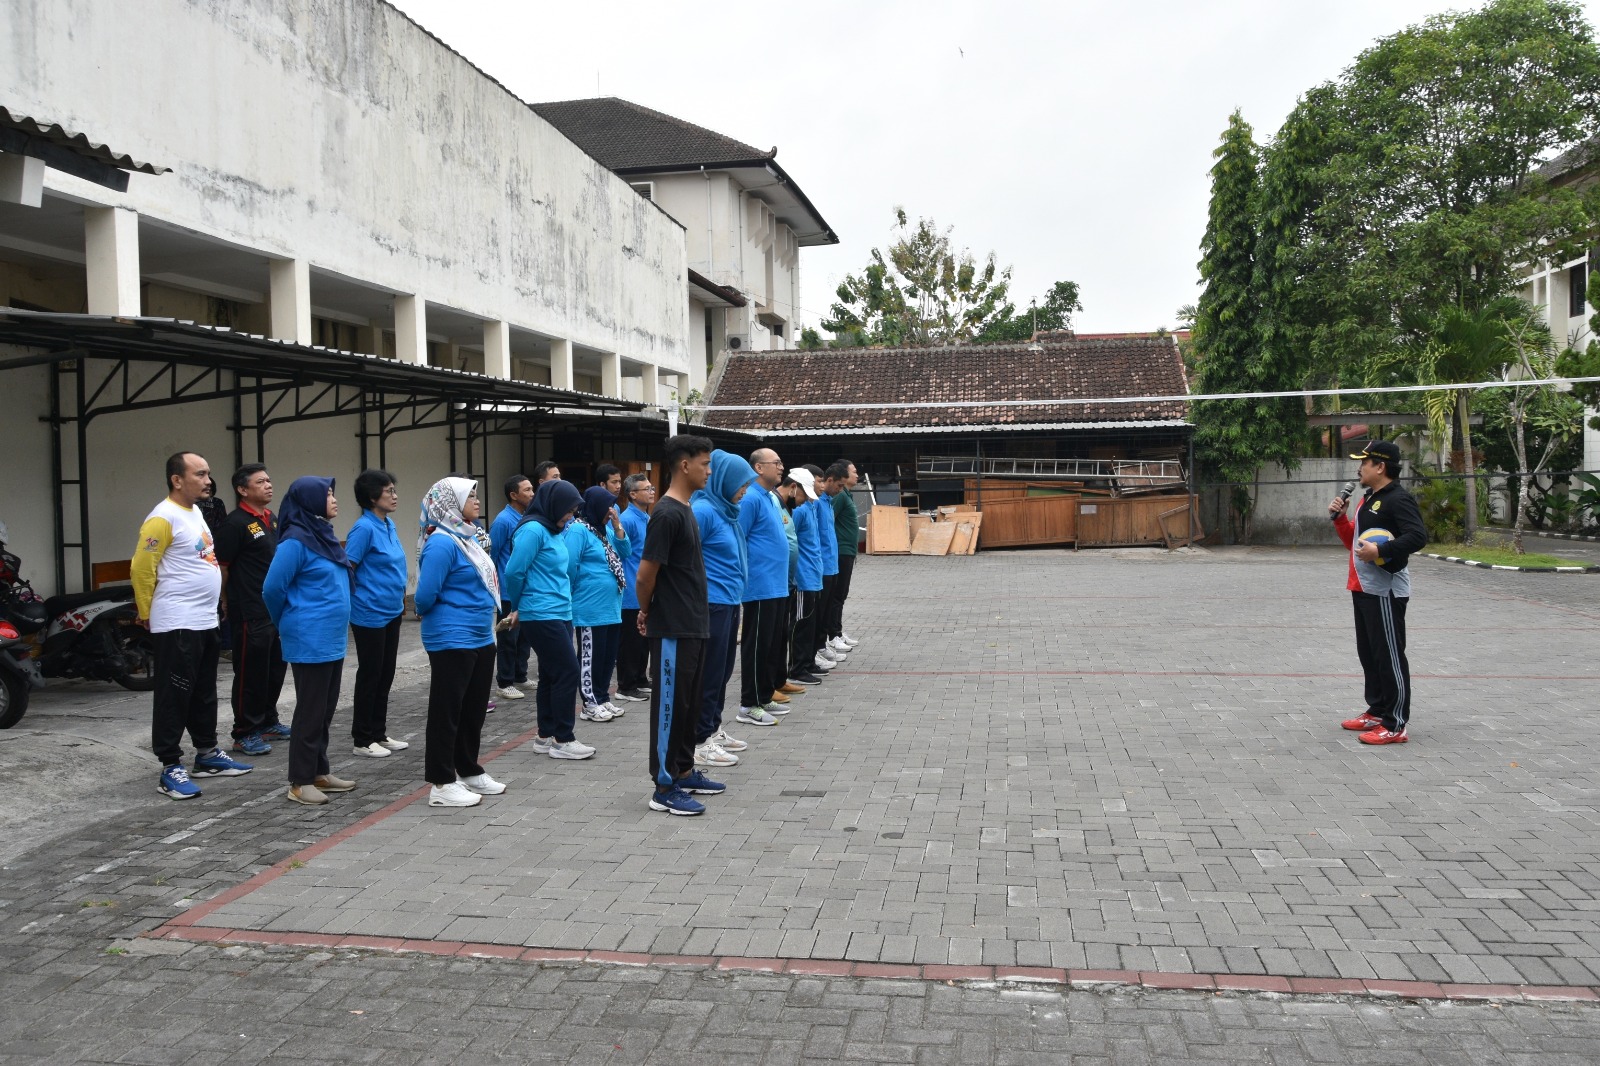 Pengadilan Negeri Yogyakarta Melaksanakan Seremonial Perlombaan HUT Kemerdekaan RI ke-78 dan HUT Mahkamah Agung ke-78